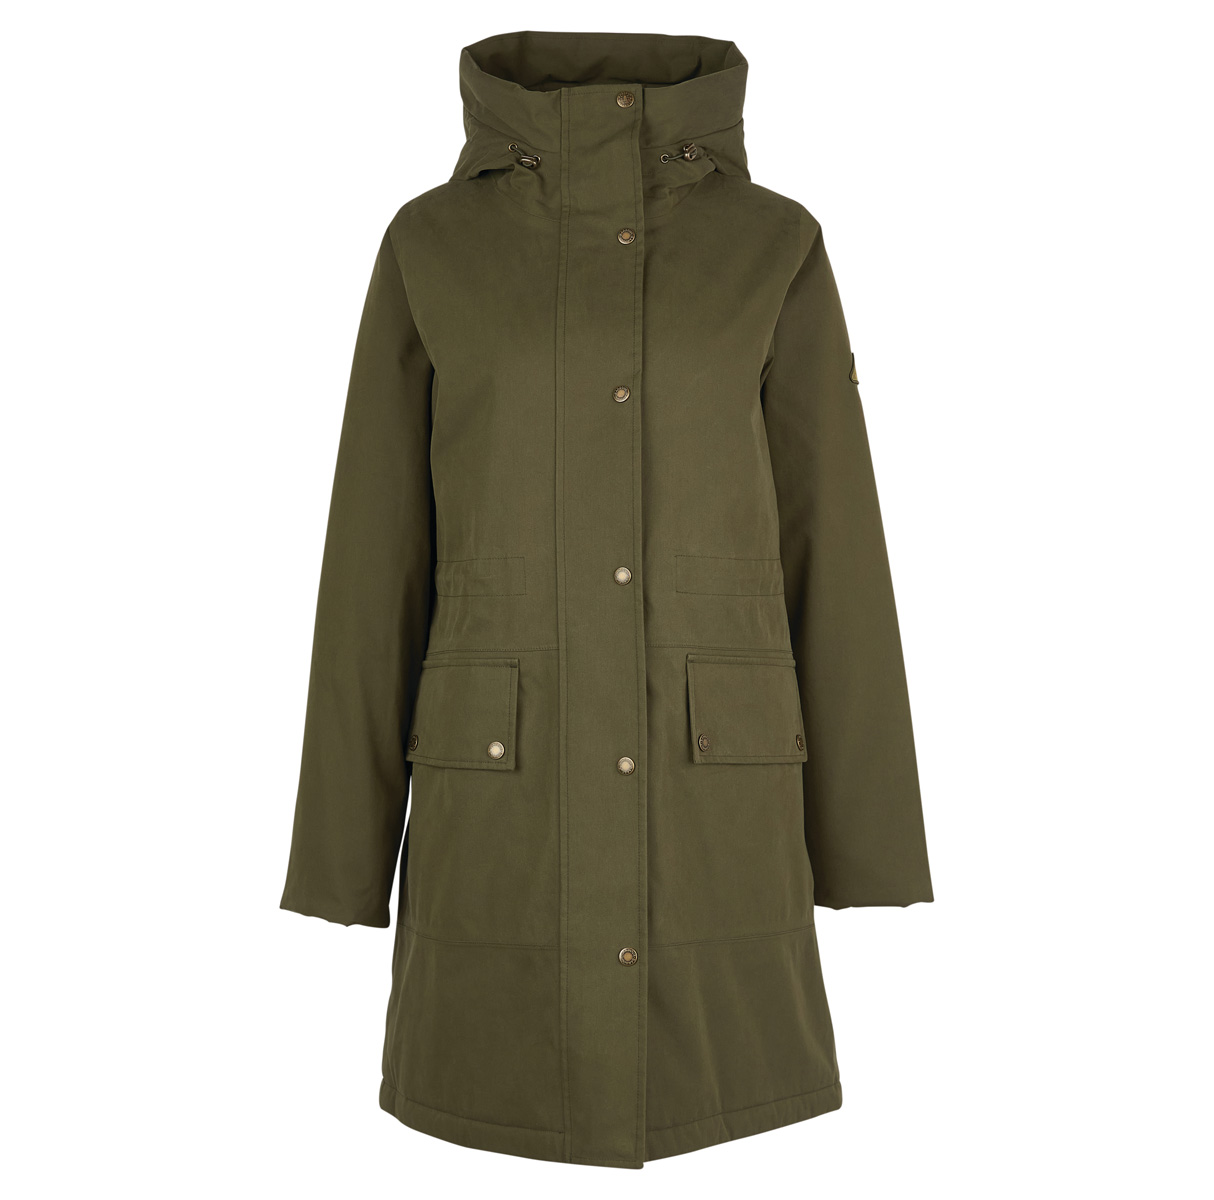 Die Mersea Jacke ist dank des langen Schnitts sowie der verarbeiteten Membrane ideal für lange Spaziergänge bei Regenwetter geeignet.